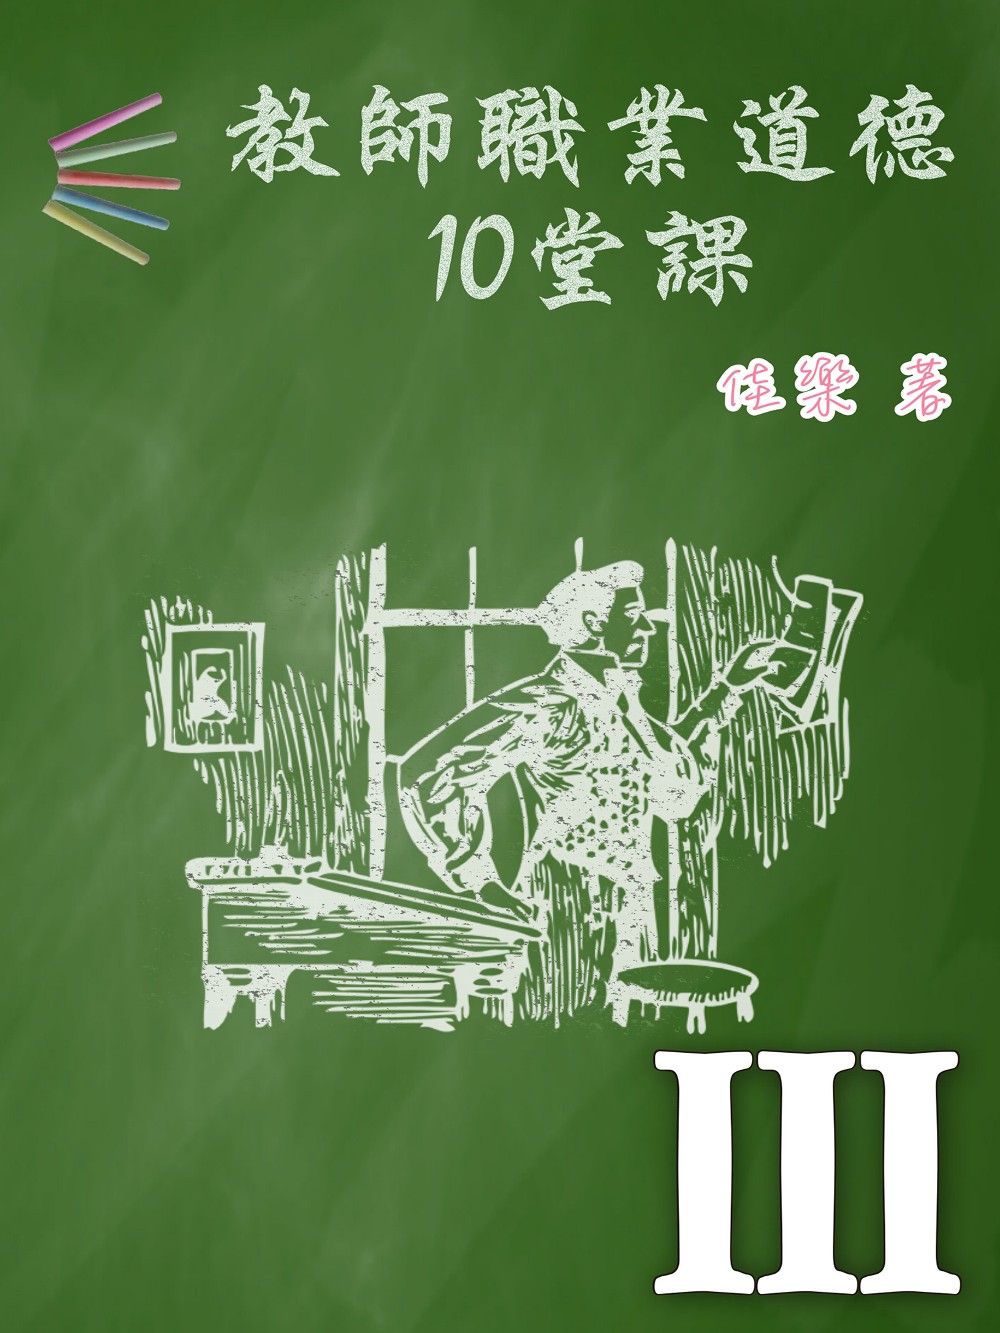 教師職業道德10堂課 Ⅲ (電子書)